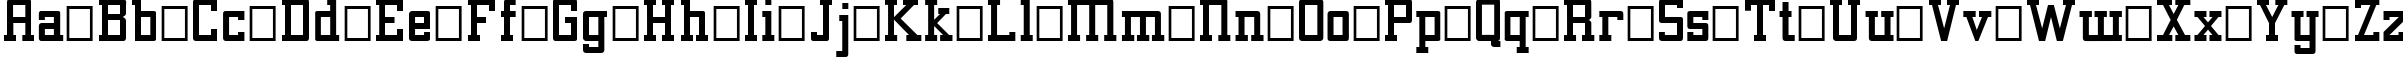 Пример написания английского алфавита шрифтом Alexandria